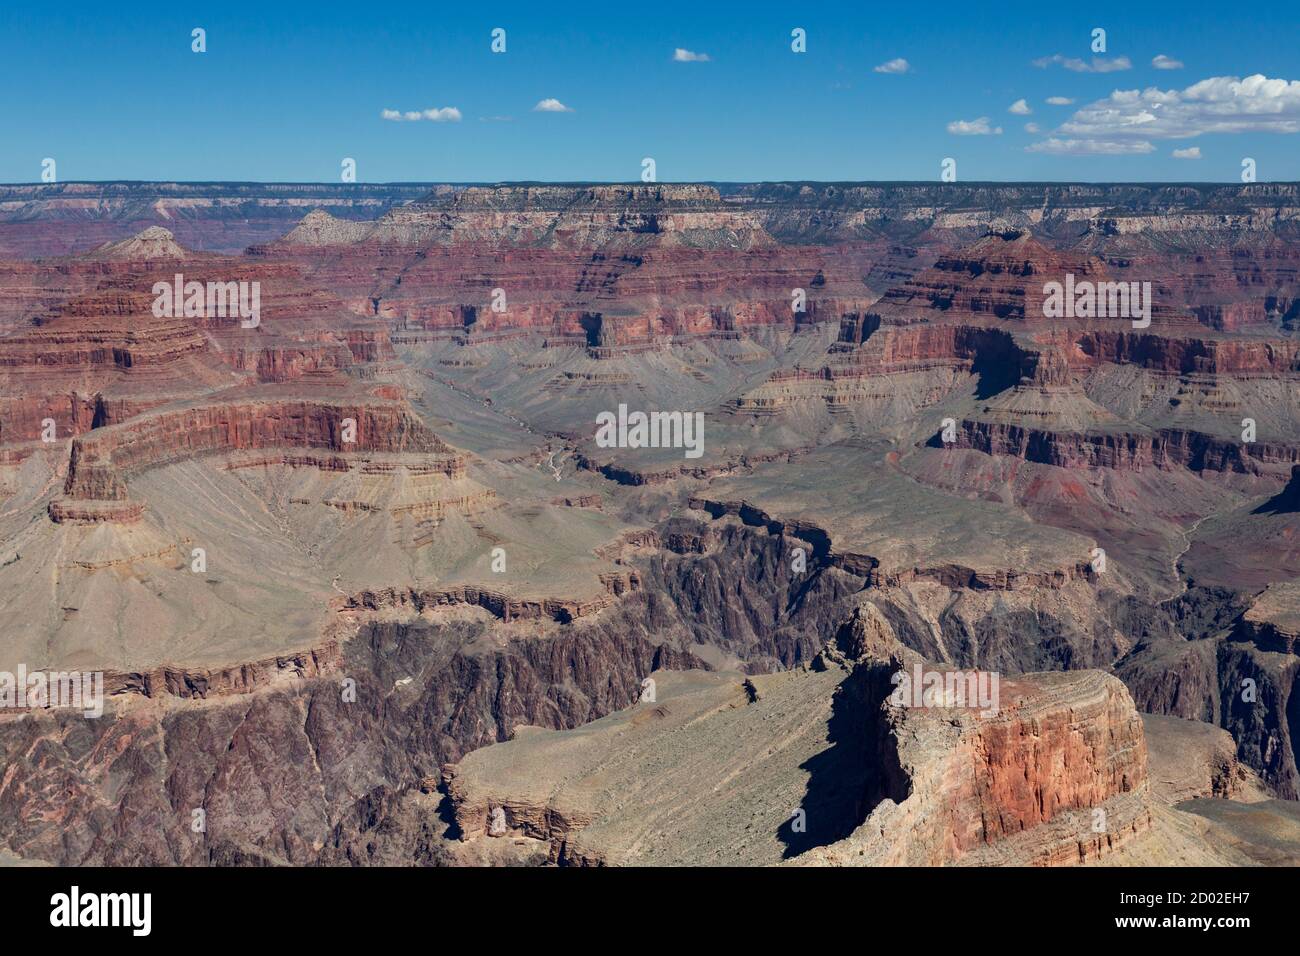 Grand canyon national park landscape, Arizona, United States Stock Photo